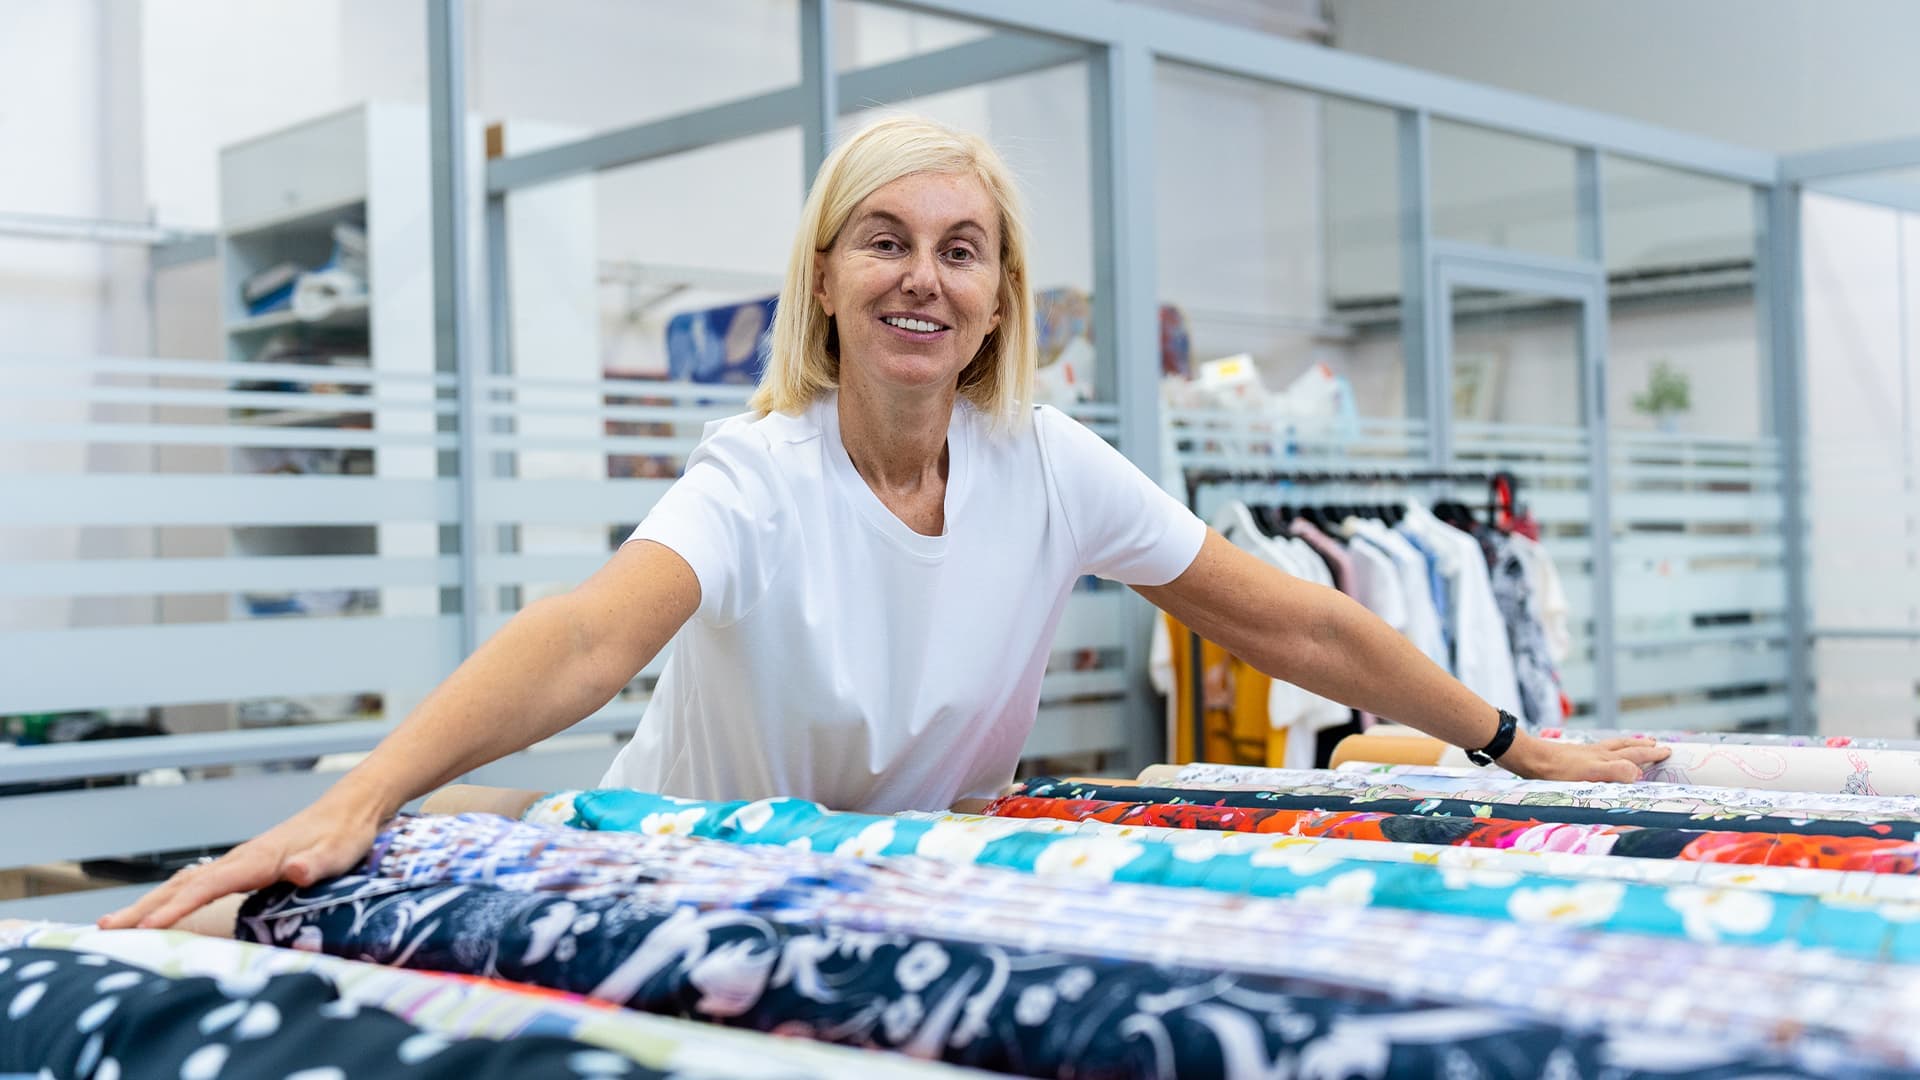 Александра Калошина: «Текстильный дизайн — это промышленный дизайн. Мы думаем полками магазина одежды и километрами ткани»